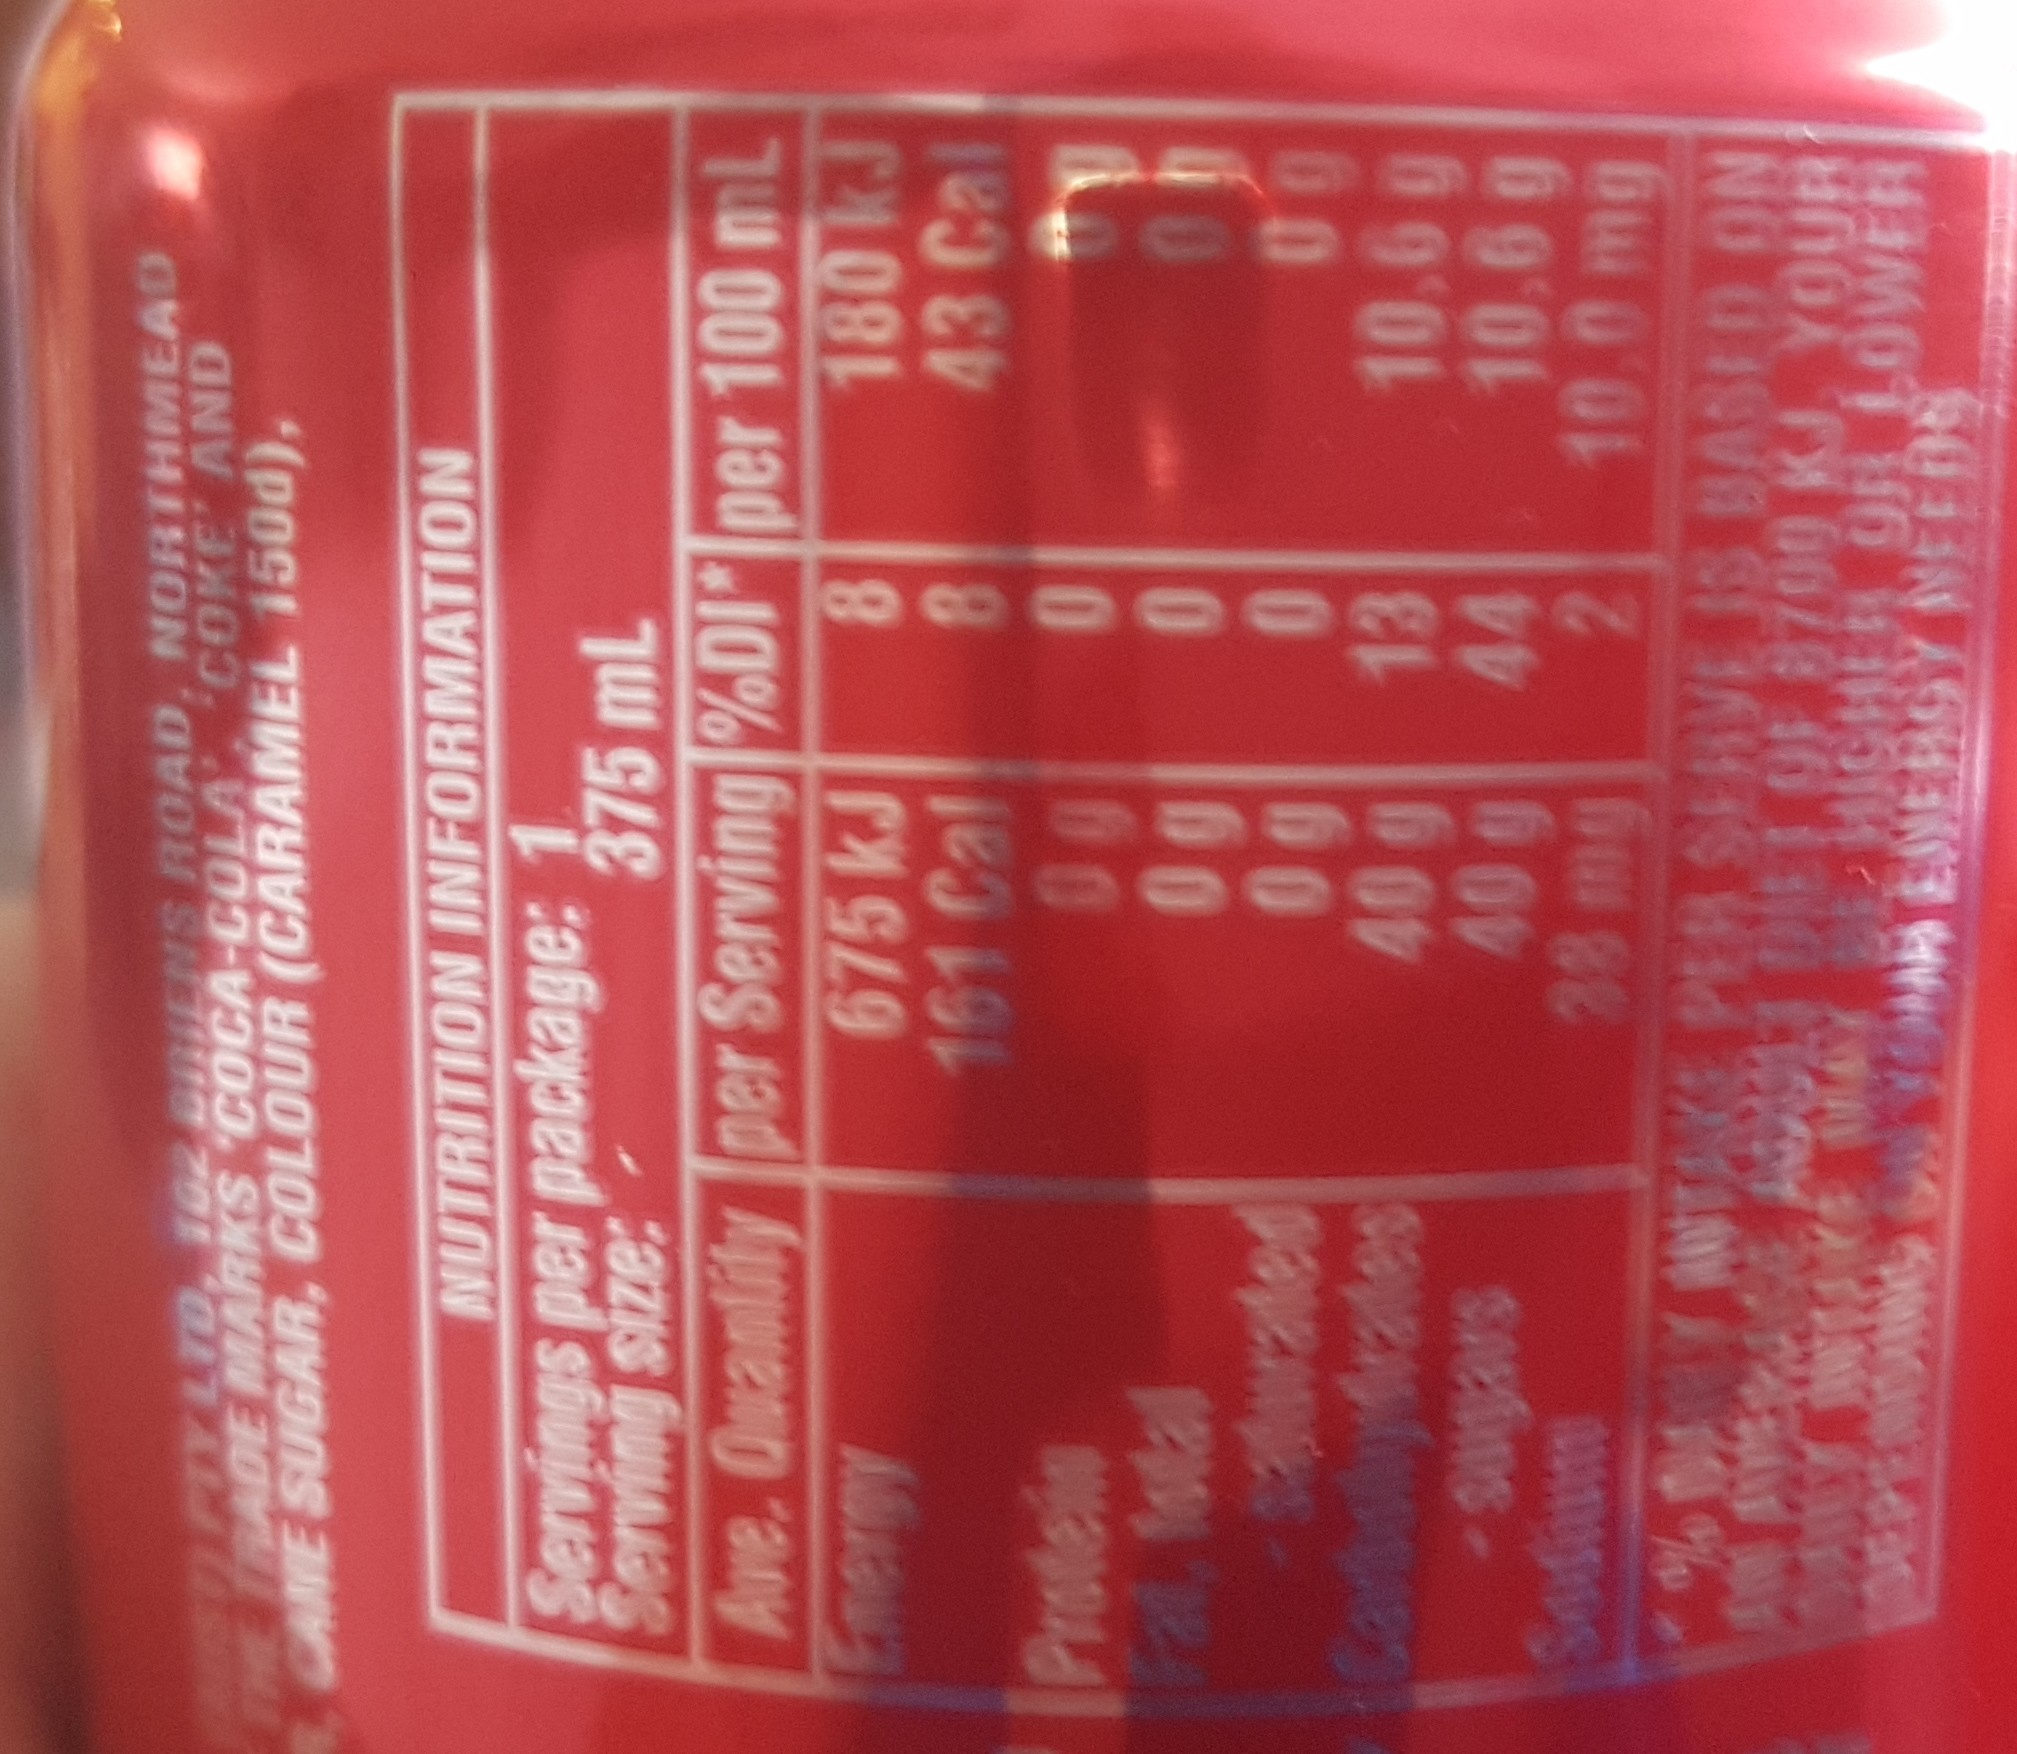 Coca-Cola - Ingredients